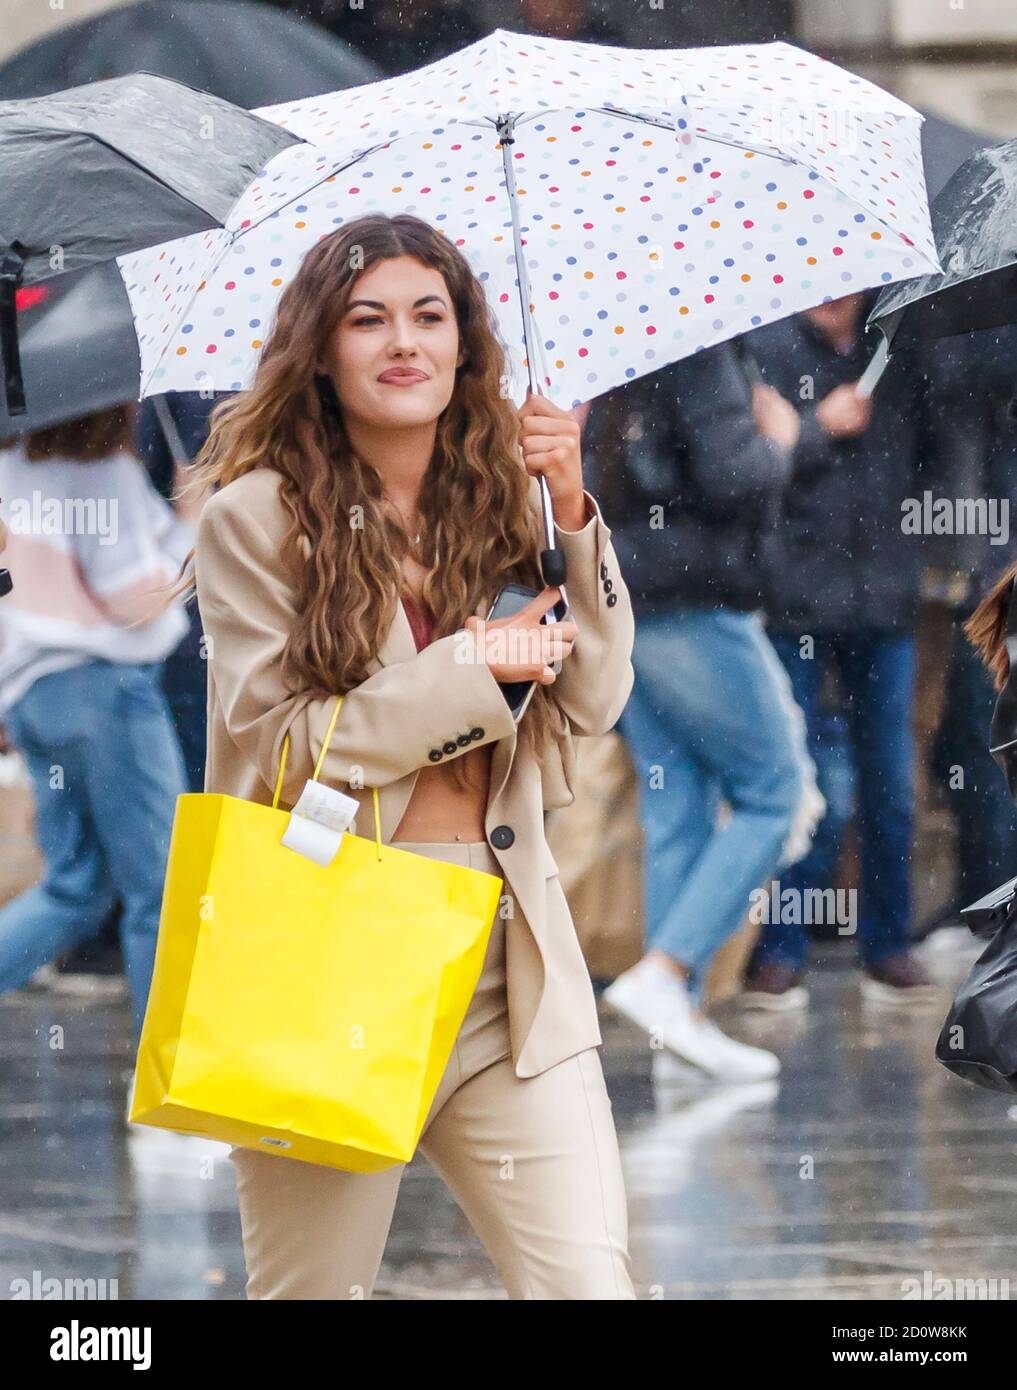 Une femme avec un parapluie dans le centre-ville de Nottingham, comme de fortes pluies arraque des parties du Royaume-Uni, avec le met Office émettant des avertissements non vus depuis mars, Comme des vents de jusqu'à 65 km/h sont attendus le long de la côte samedi avec de fortes pluies comme Storm Alex frappe le Royaume-Uni. Banque D'Images